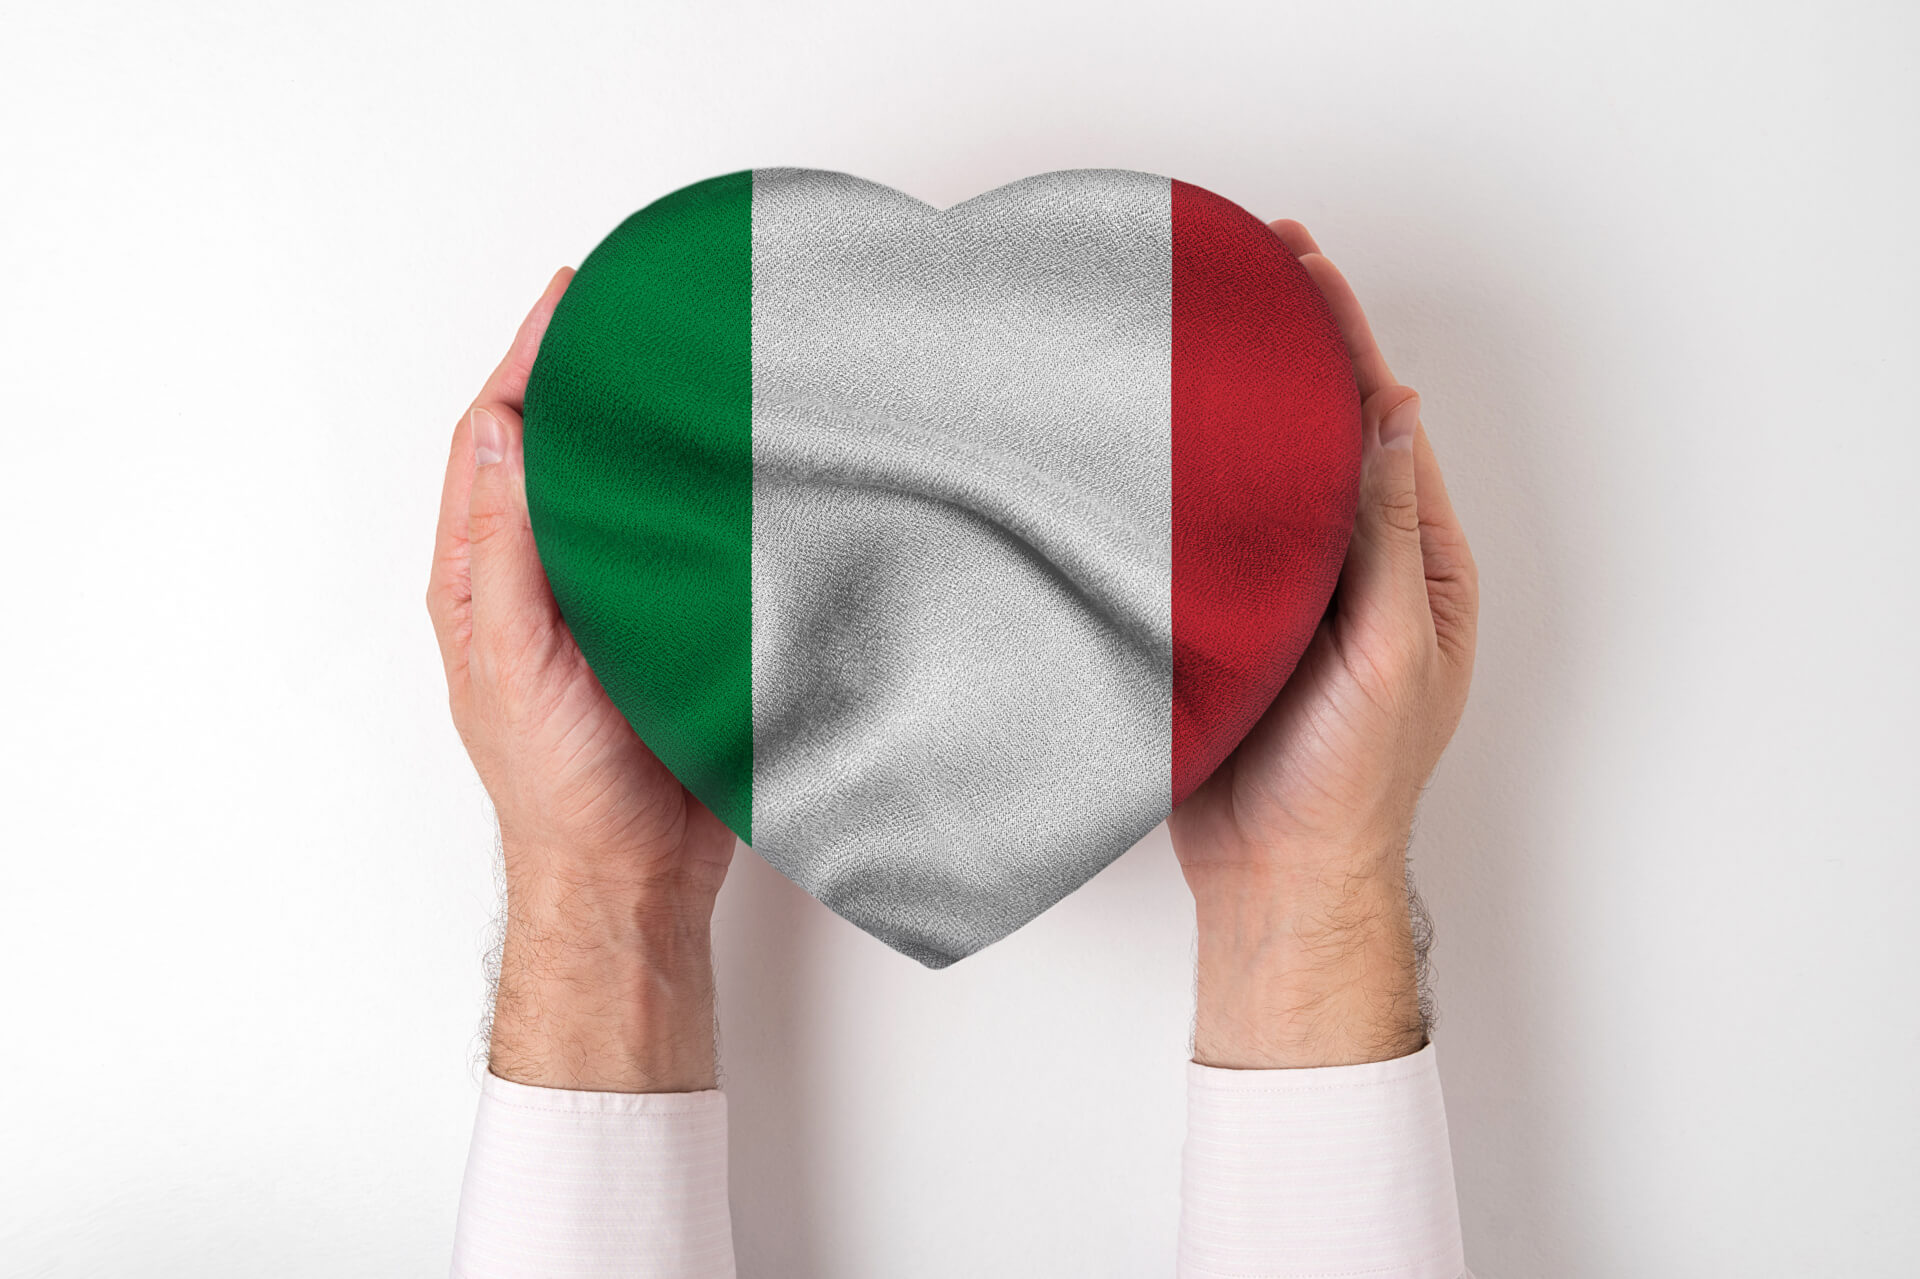 Made in Italy - Perché è così amato nel mondo?